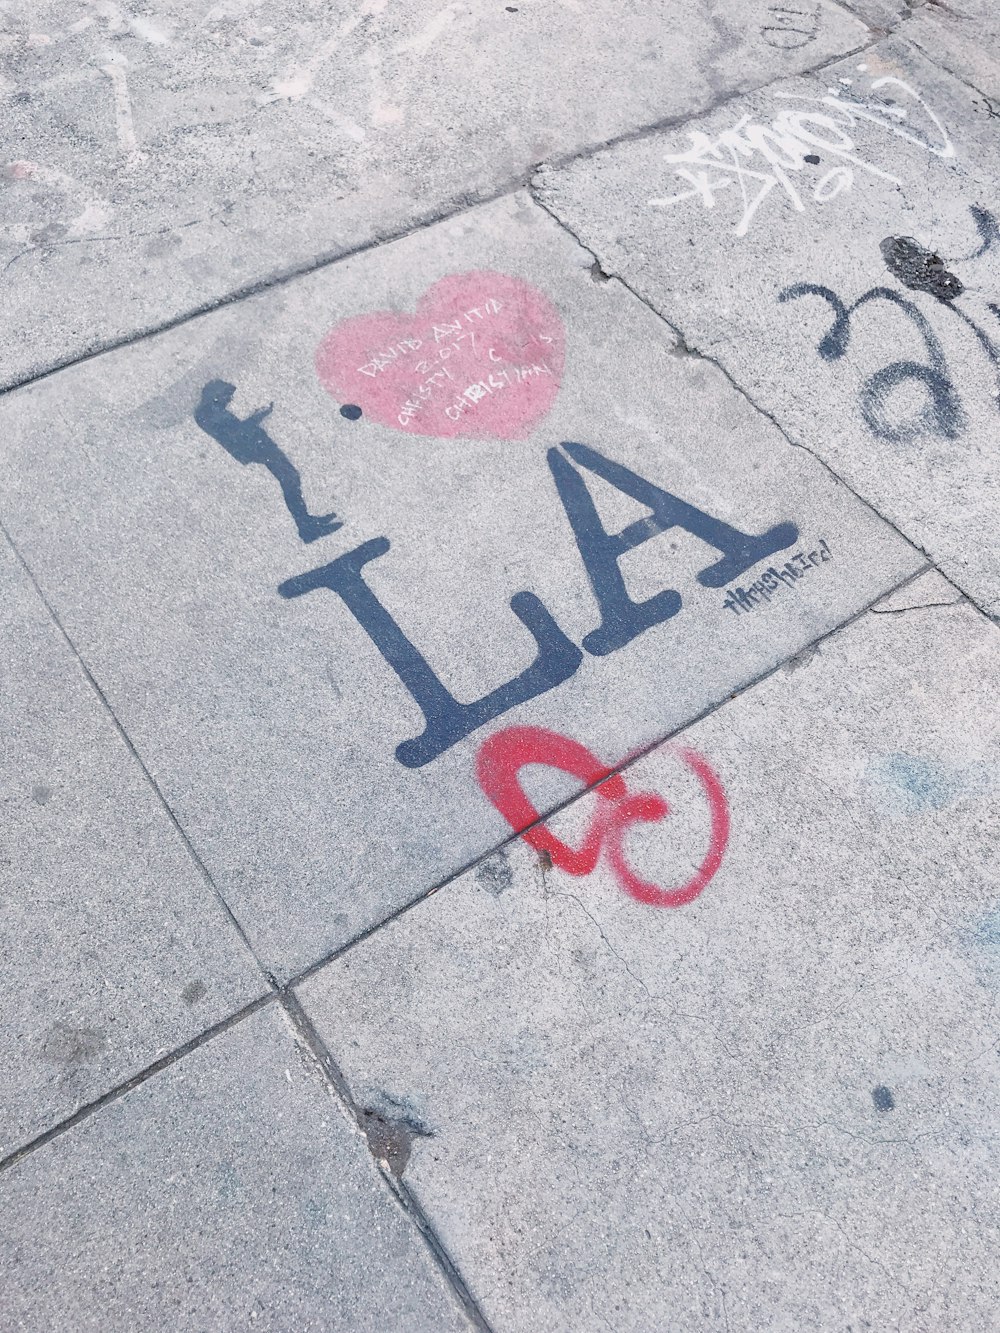 I heart LA graffiti on pavement